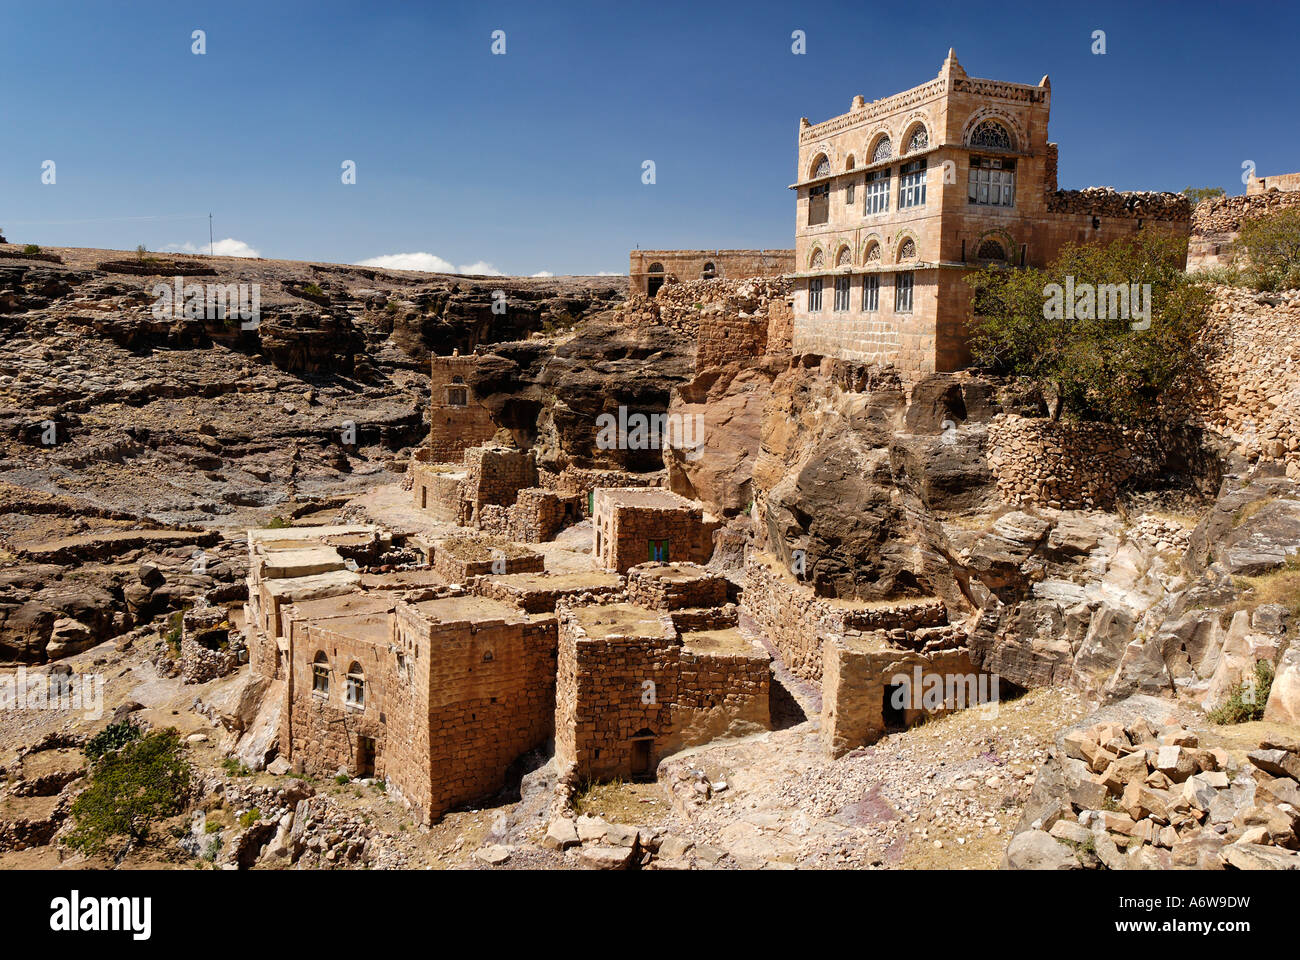 Mountain village in the jemenian mountains, Yemen Stock Photo